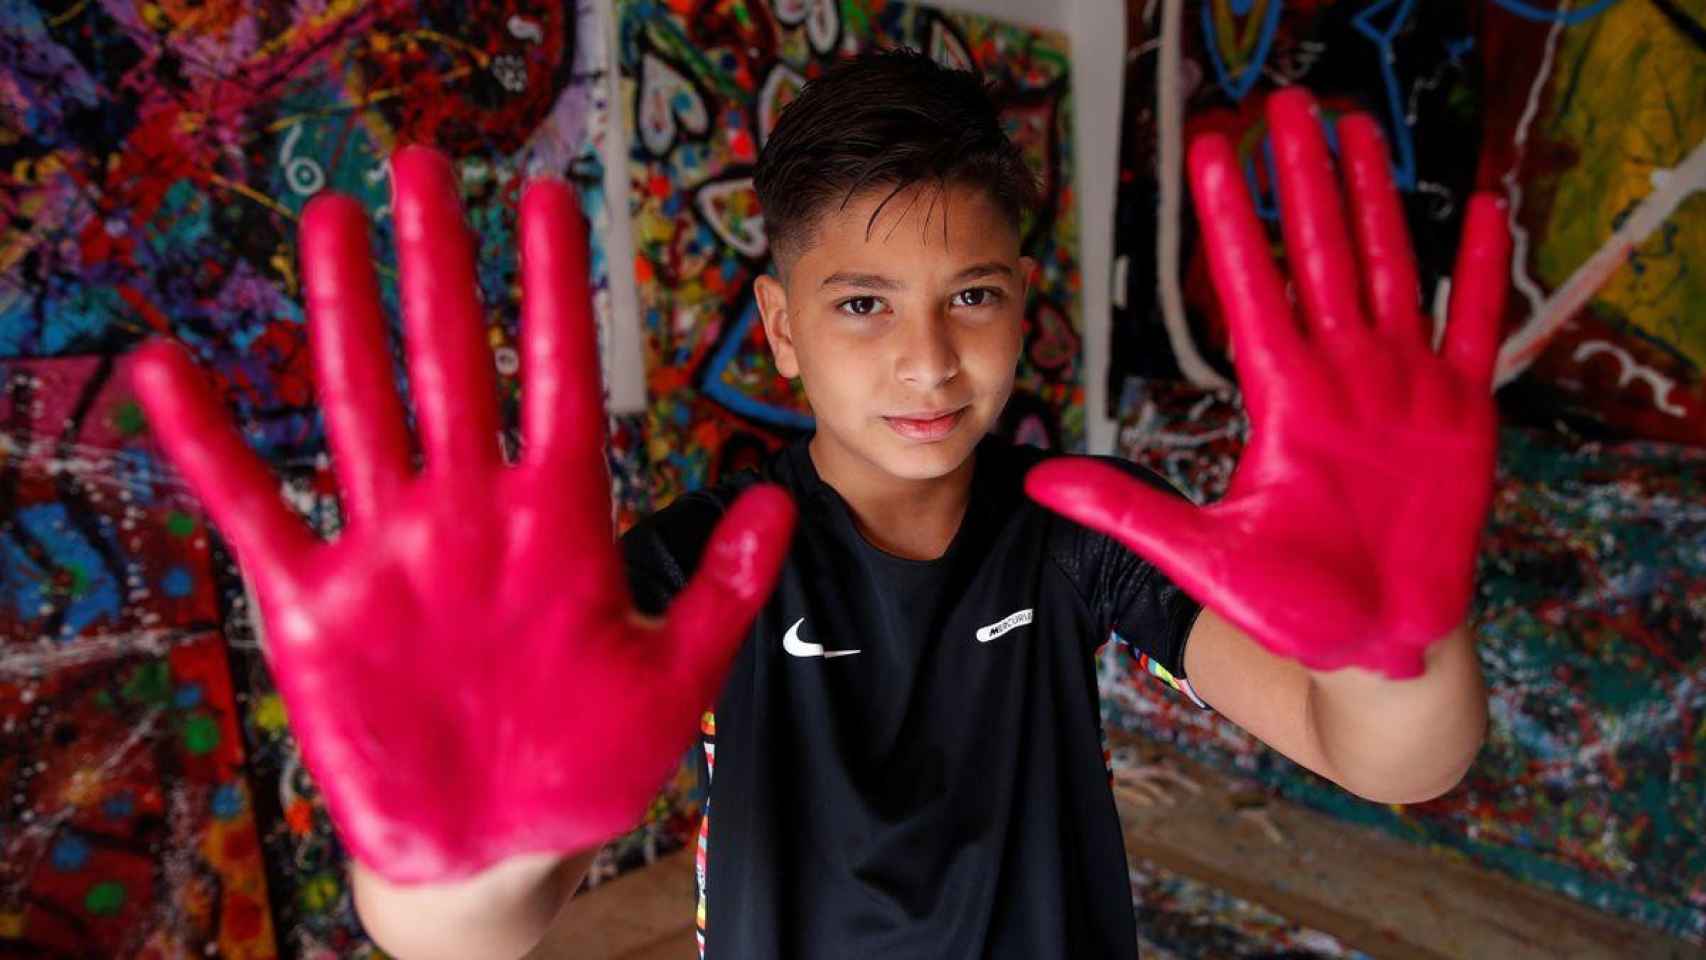 El pintor de 10 años Juanito Cortés / INSTAGRAM